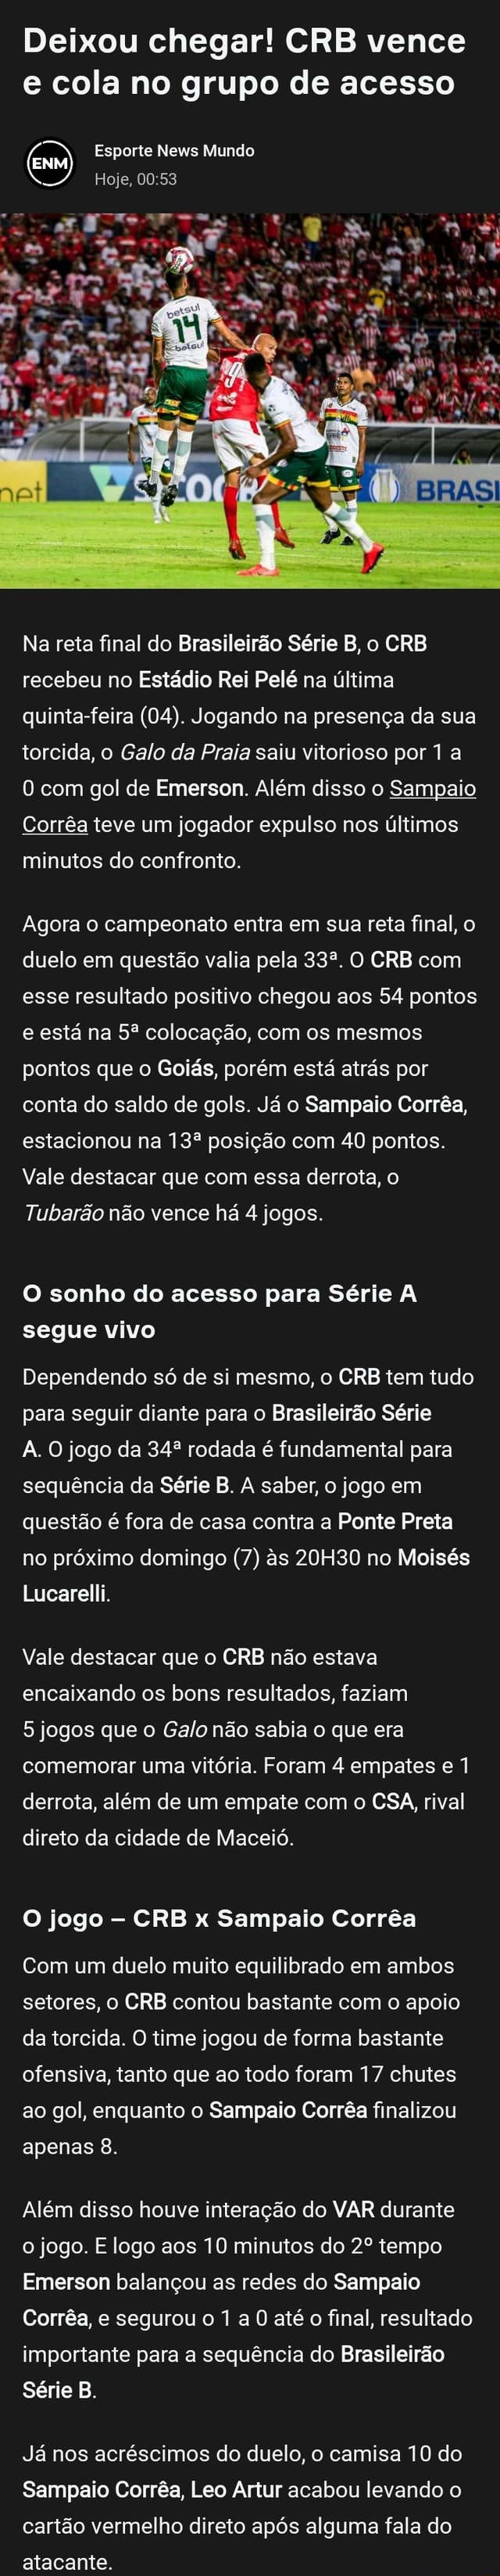 Brasileirão - Série B - Esses são os jogos da próxima rodada de